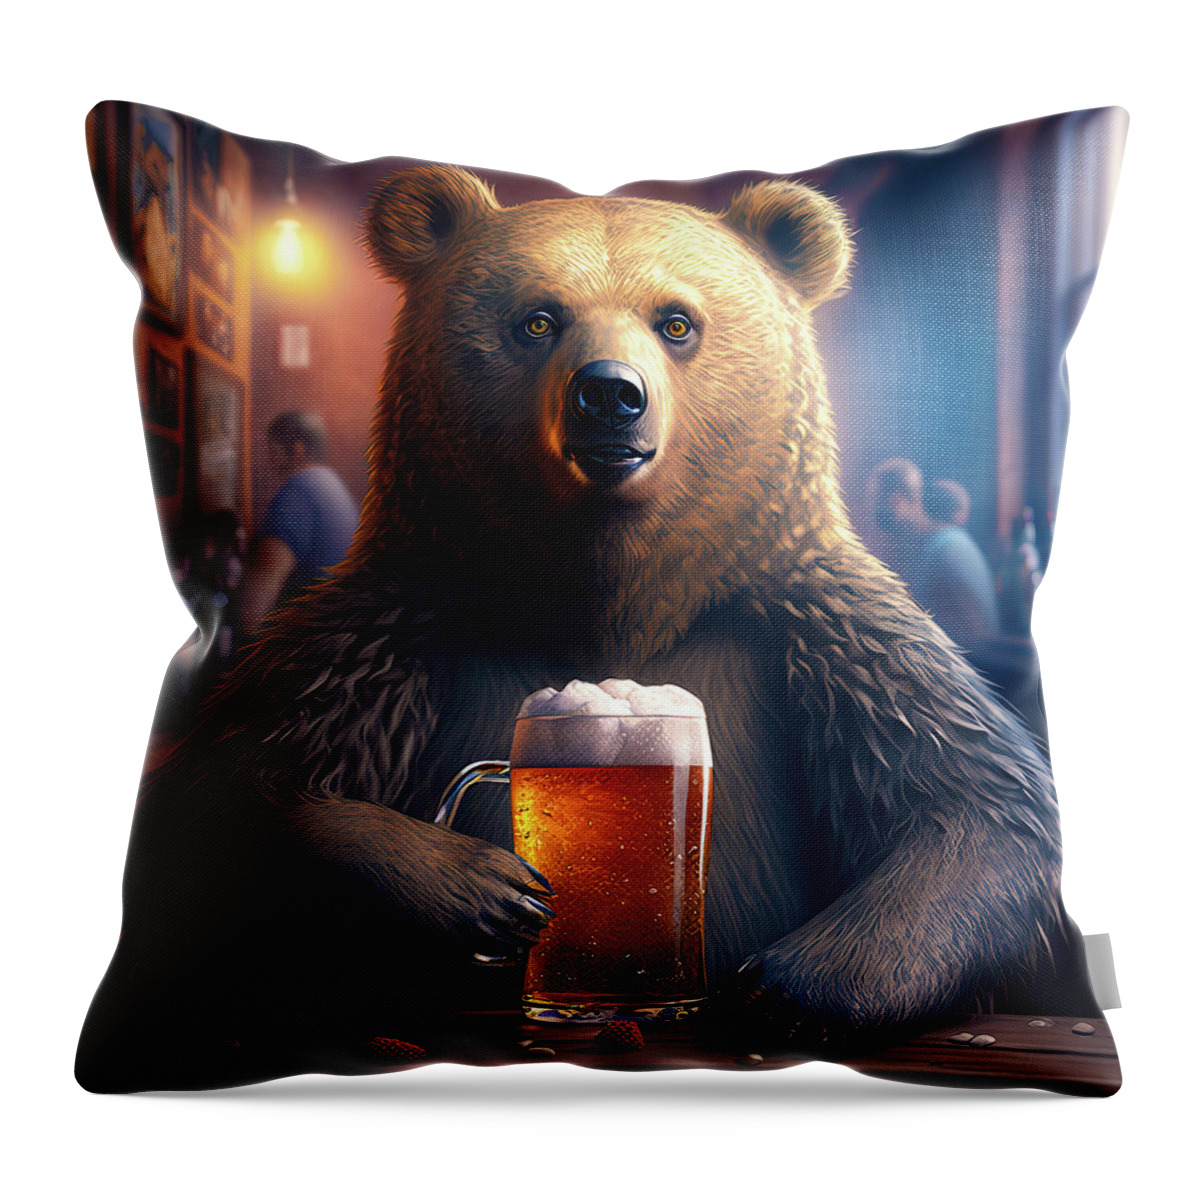 Bear Throw Pillow featuring the digital art Bear Beer Buddy 05 by Matthias Hauser